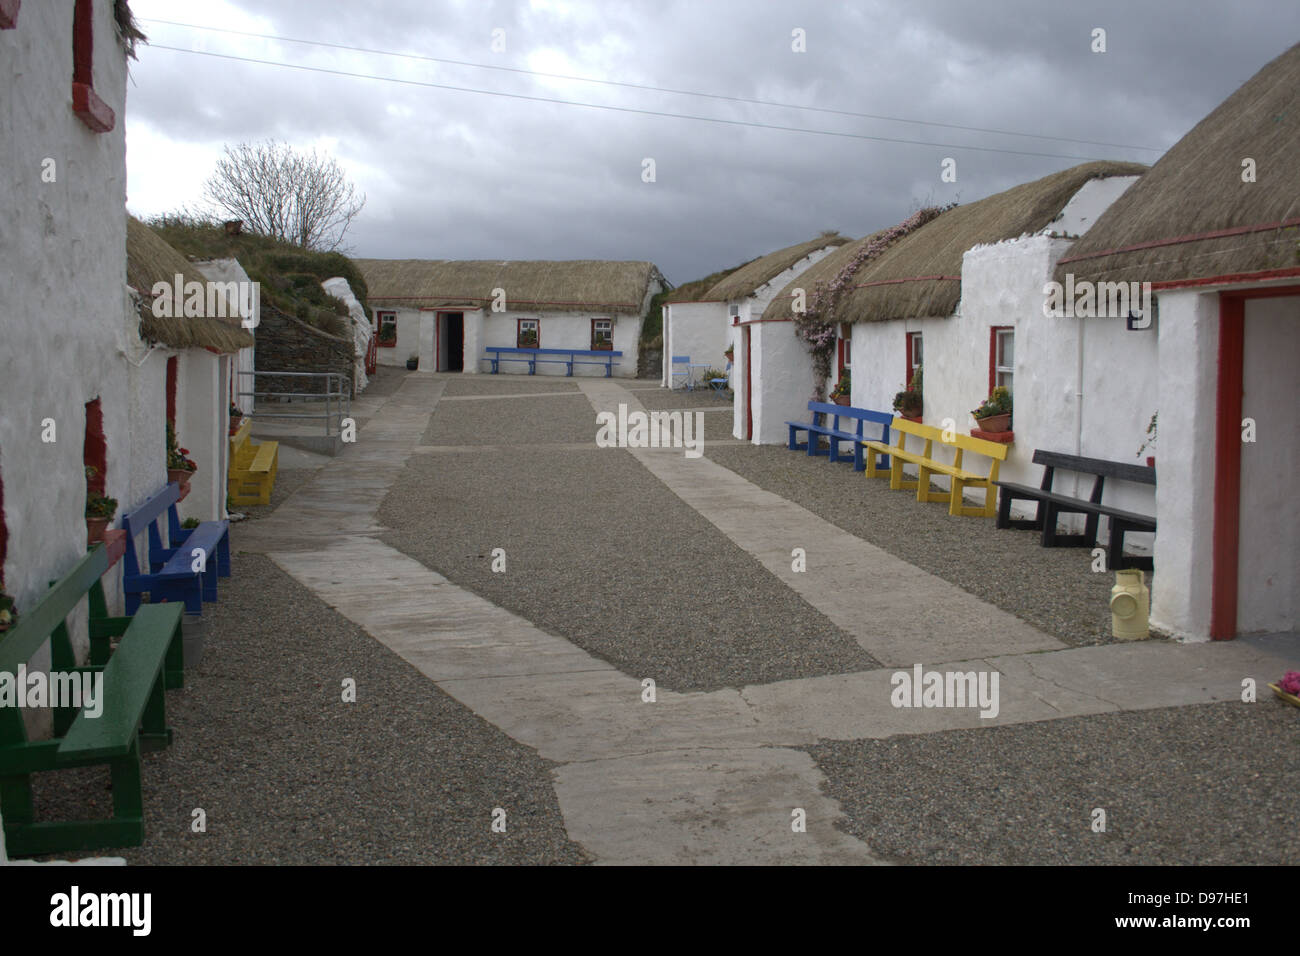 Retrato de la calle principal, alineada con crofters, chozas en hambruna Doagh Village en Donegal, Irlanda. Foto de stock